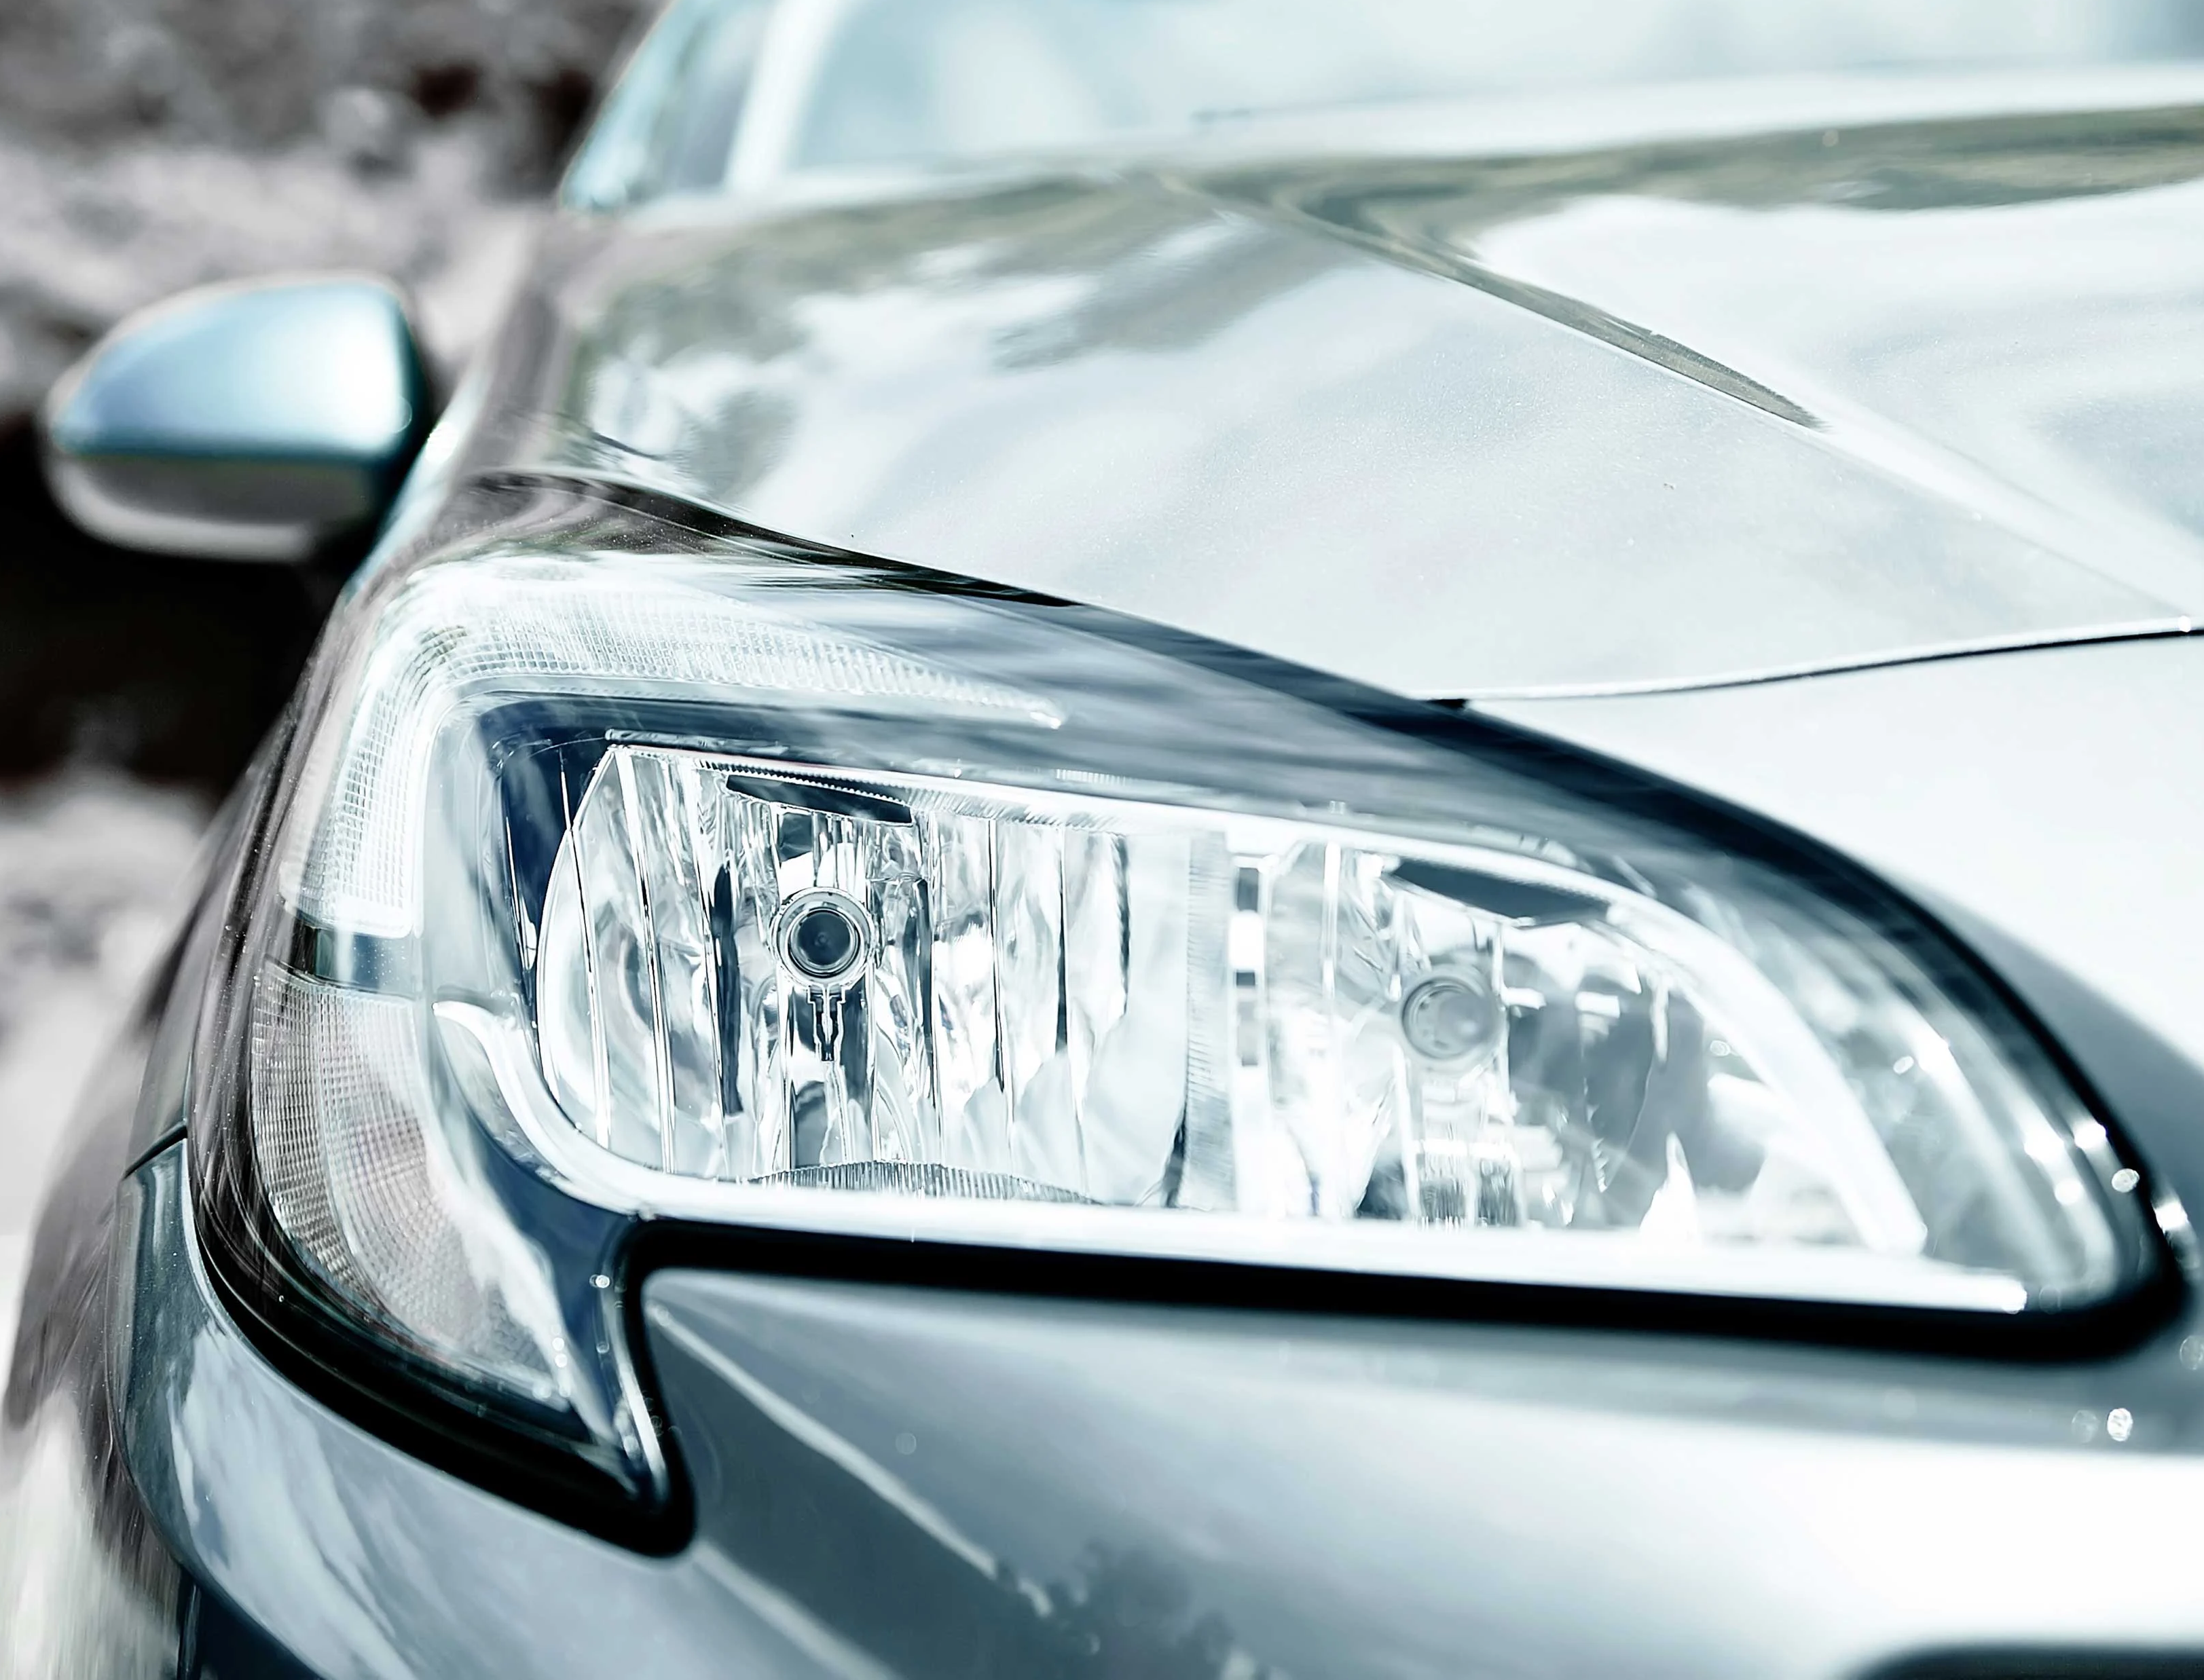 Cómo pulir y restaurar los faros de tu coche? - Audioledcar BLOG